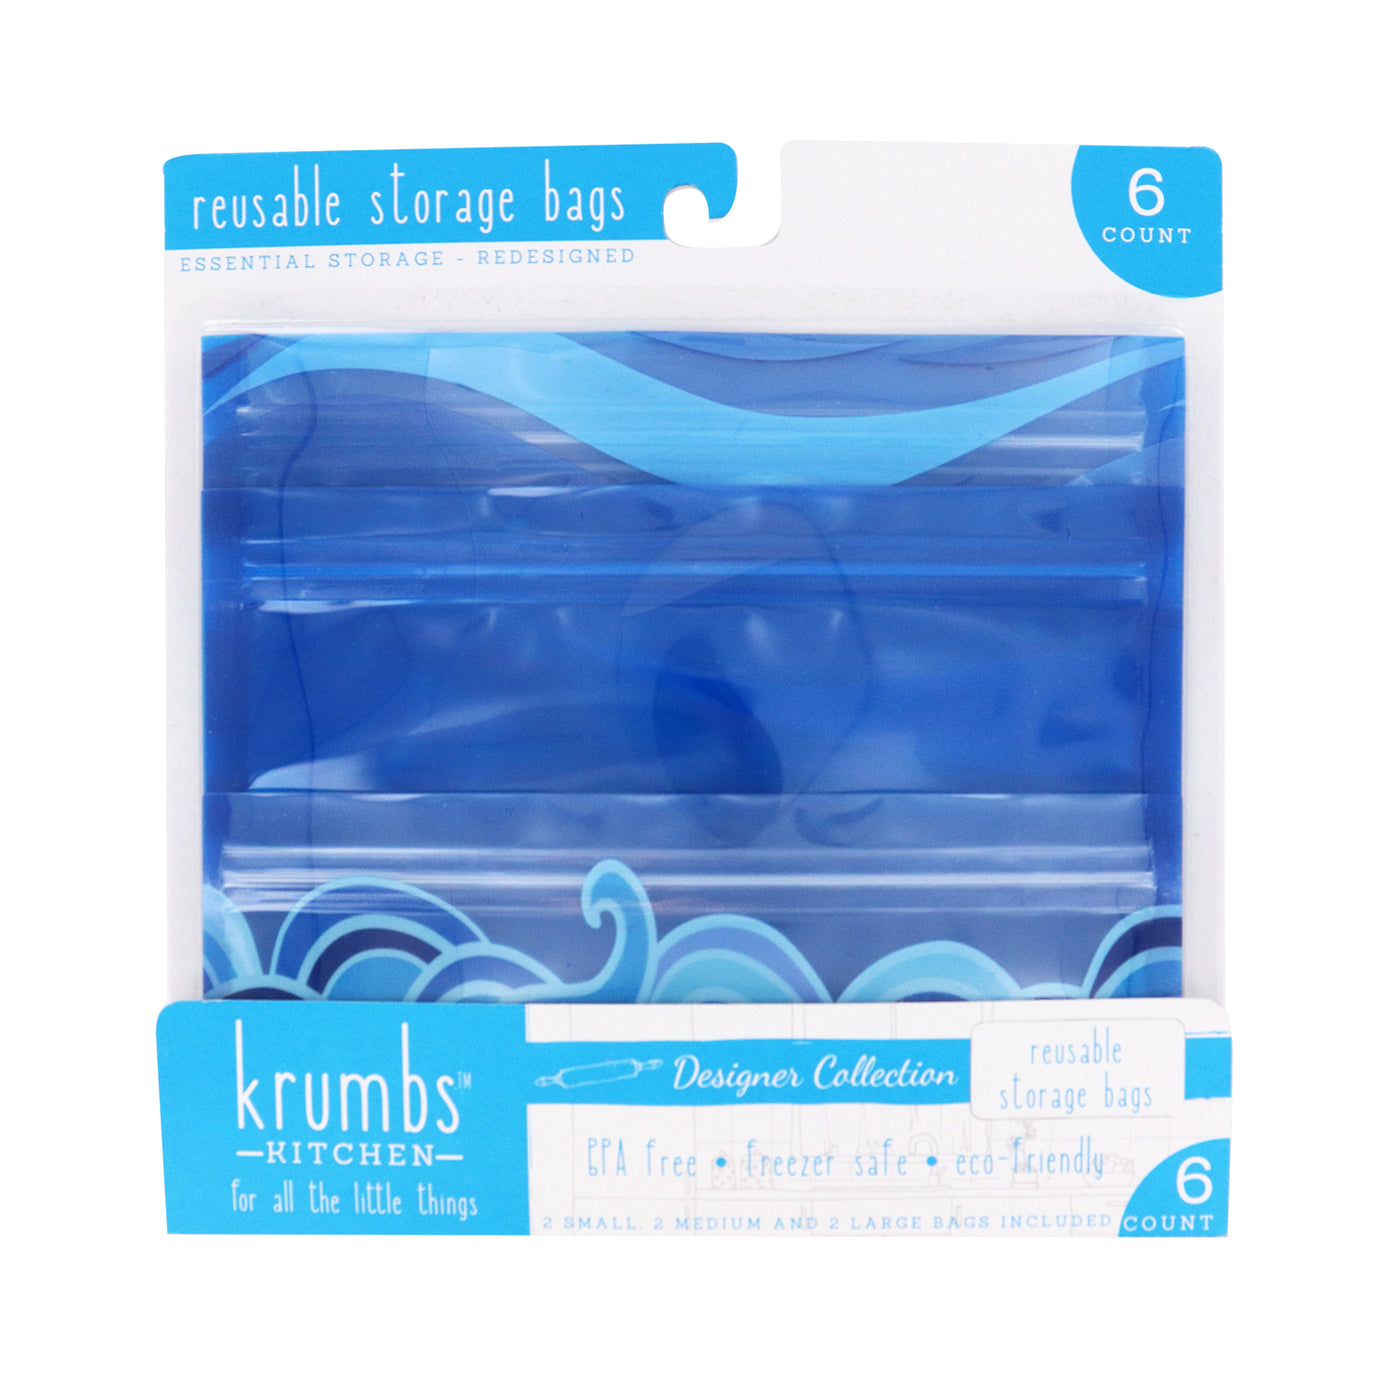 Krumbs Kitchen Reusable Storage Bags -6pk